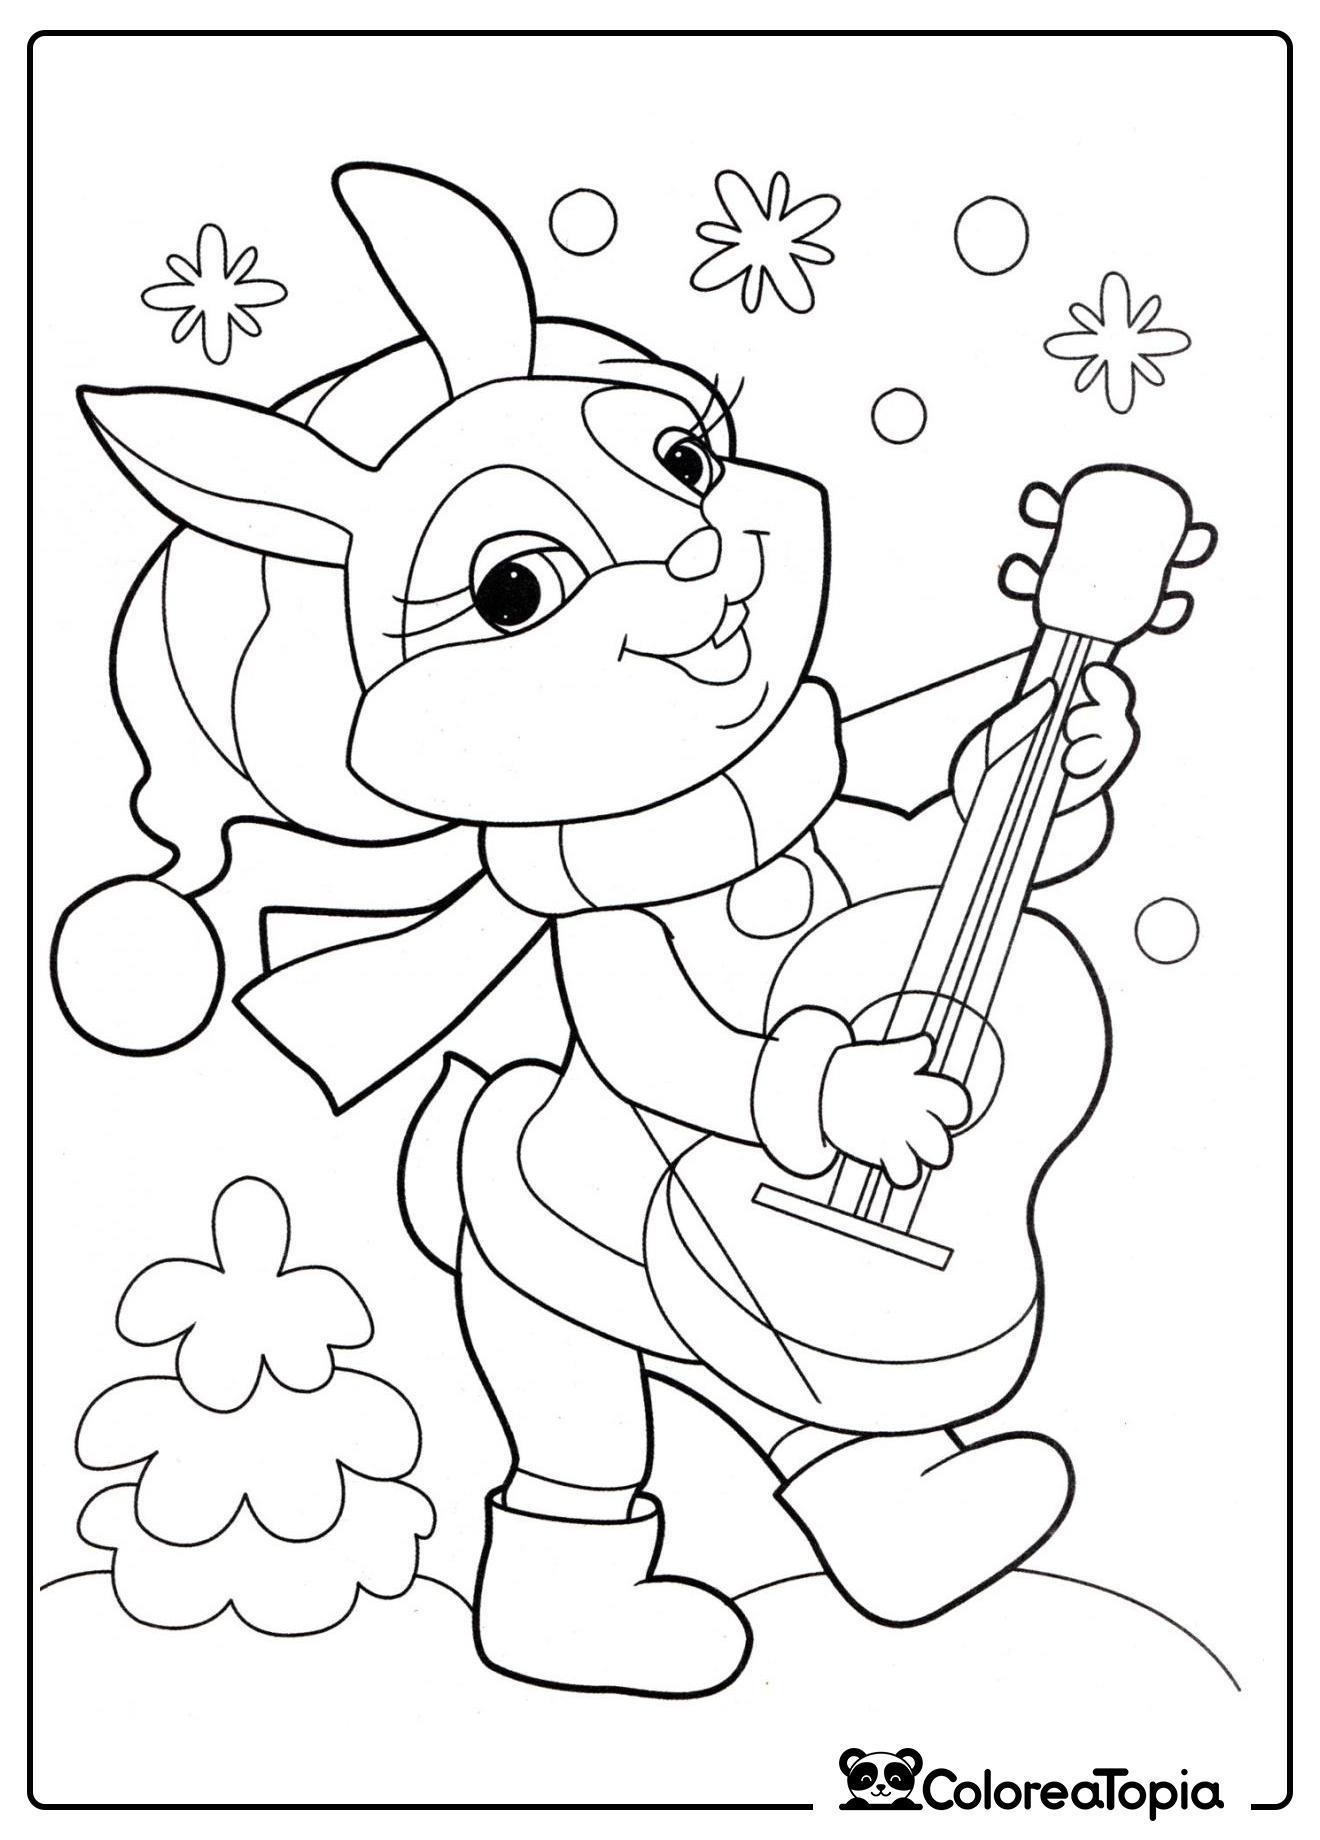 El conejito toca la guitarra - dibujo para colorear